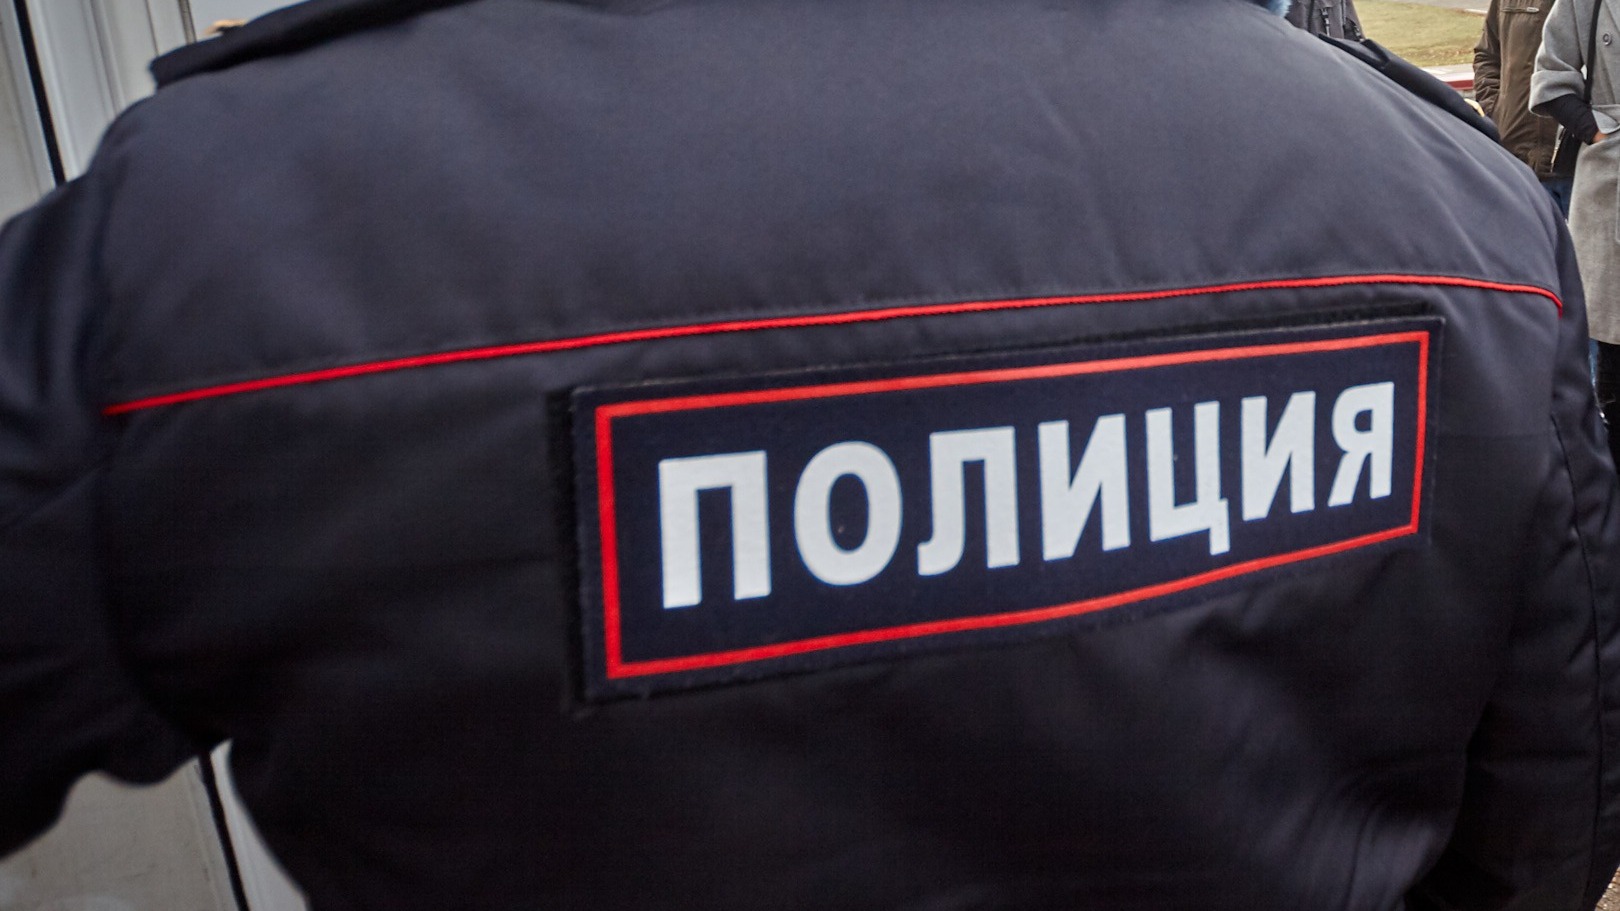 Двое детей из подъезда в Новосибирске оказались не брошенными – комментарий МВД